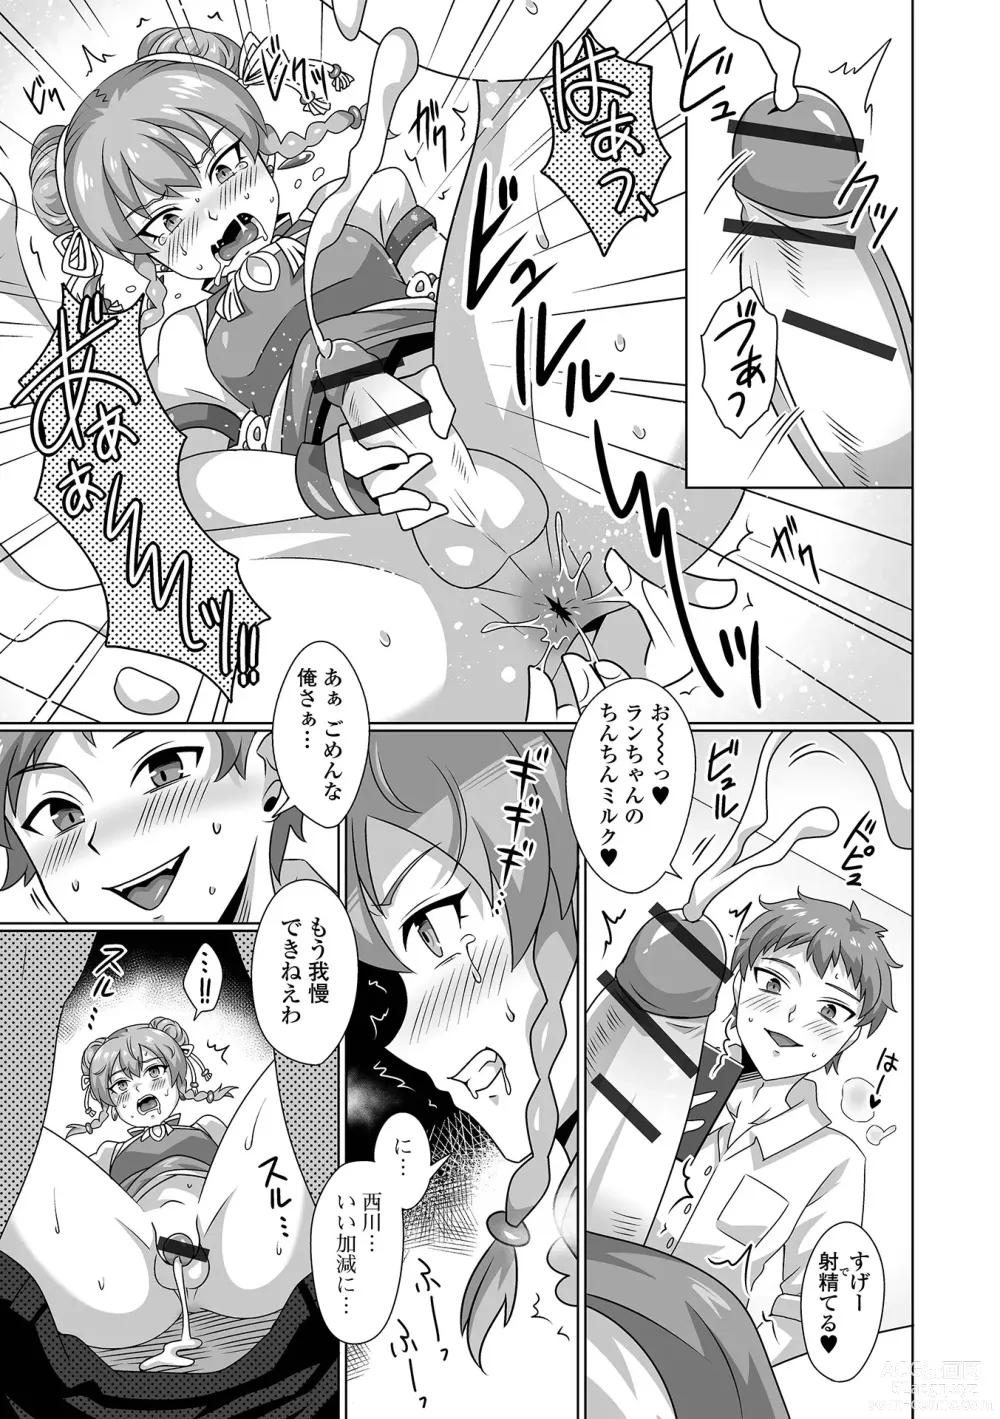 Page 77 of manga Gekkan Web Otoko no Ko-llection! S Vol. 92